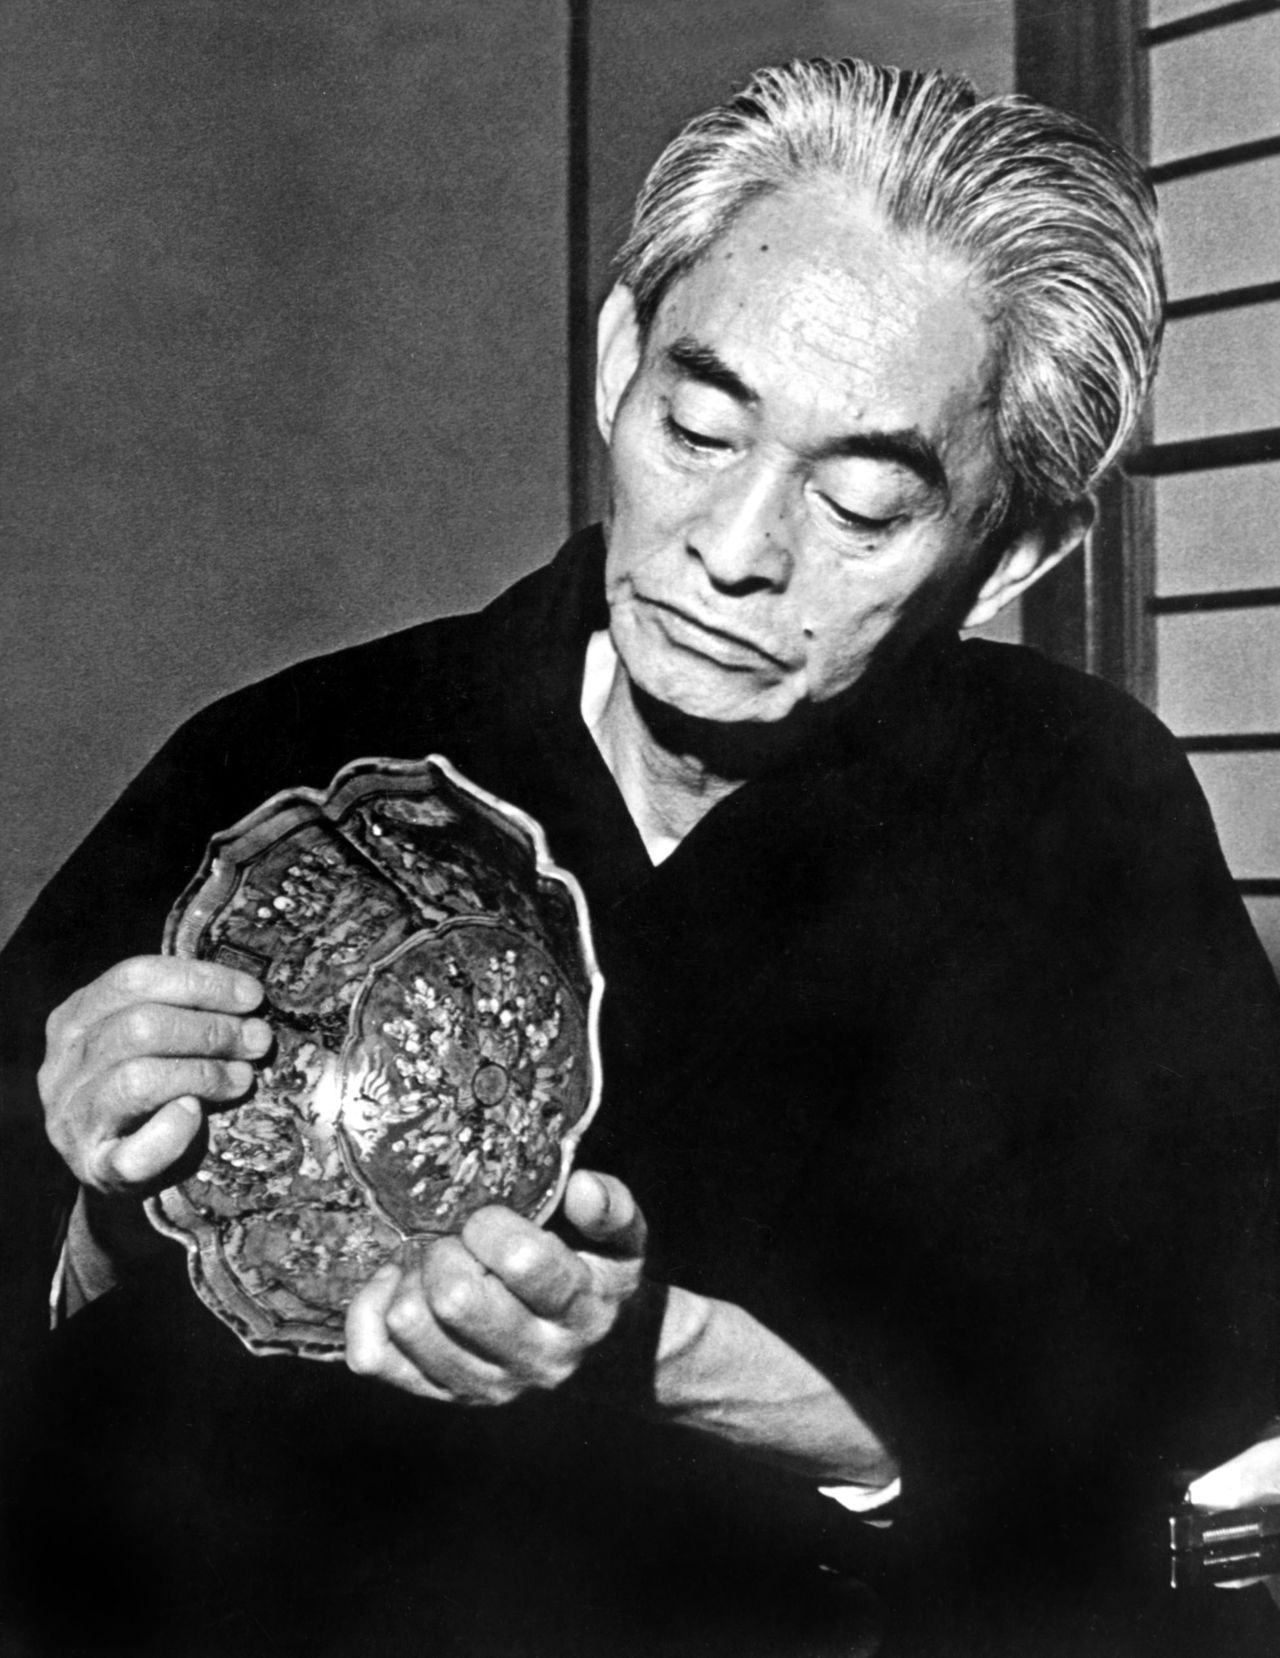 Kawabata Yasunari examining an artwork at his home in Zushi, Kanagawa Prefecture, in April 1972. (© Aflo)